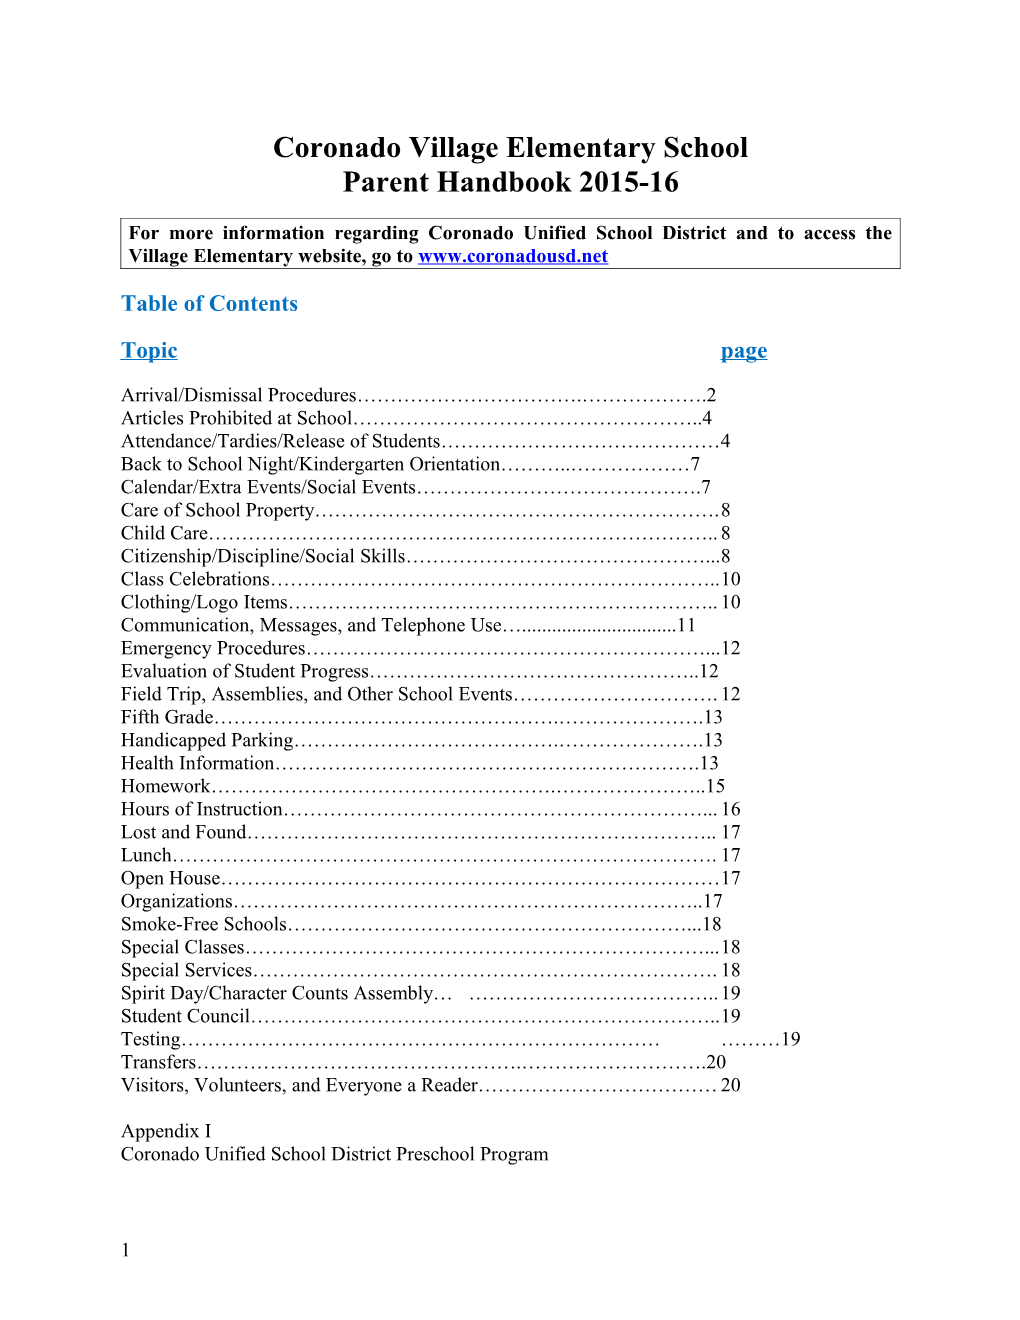 Coronado Village Elementary School Parent Handbook 2015-16